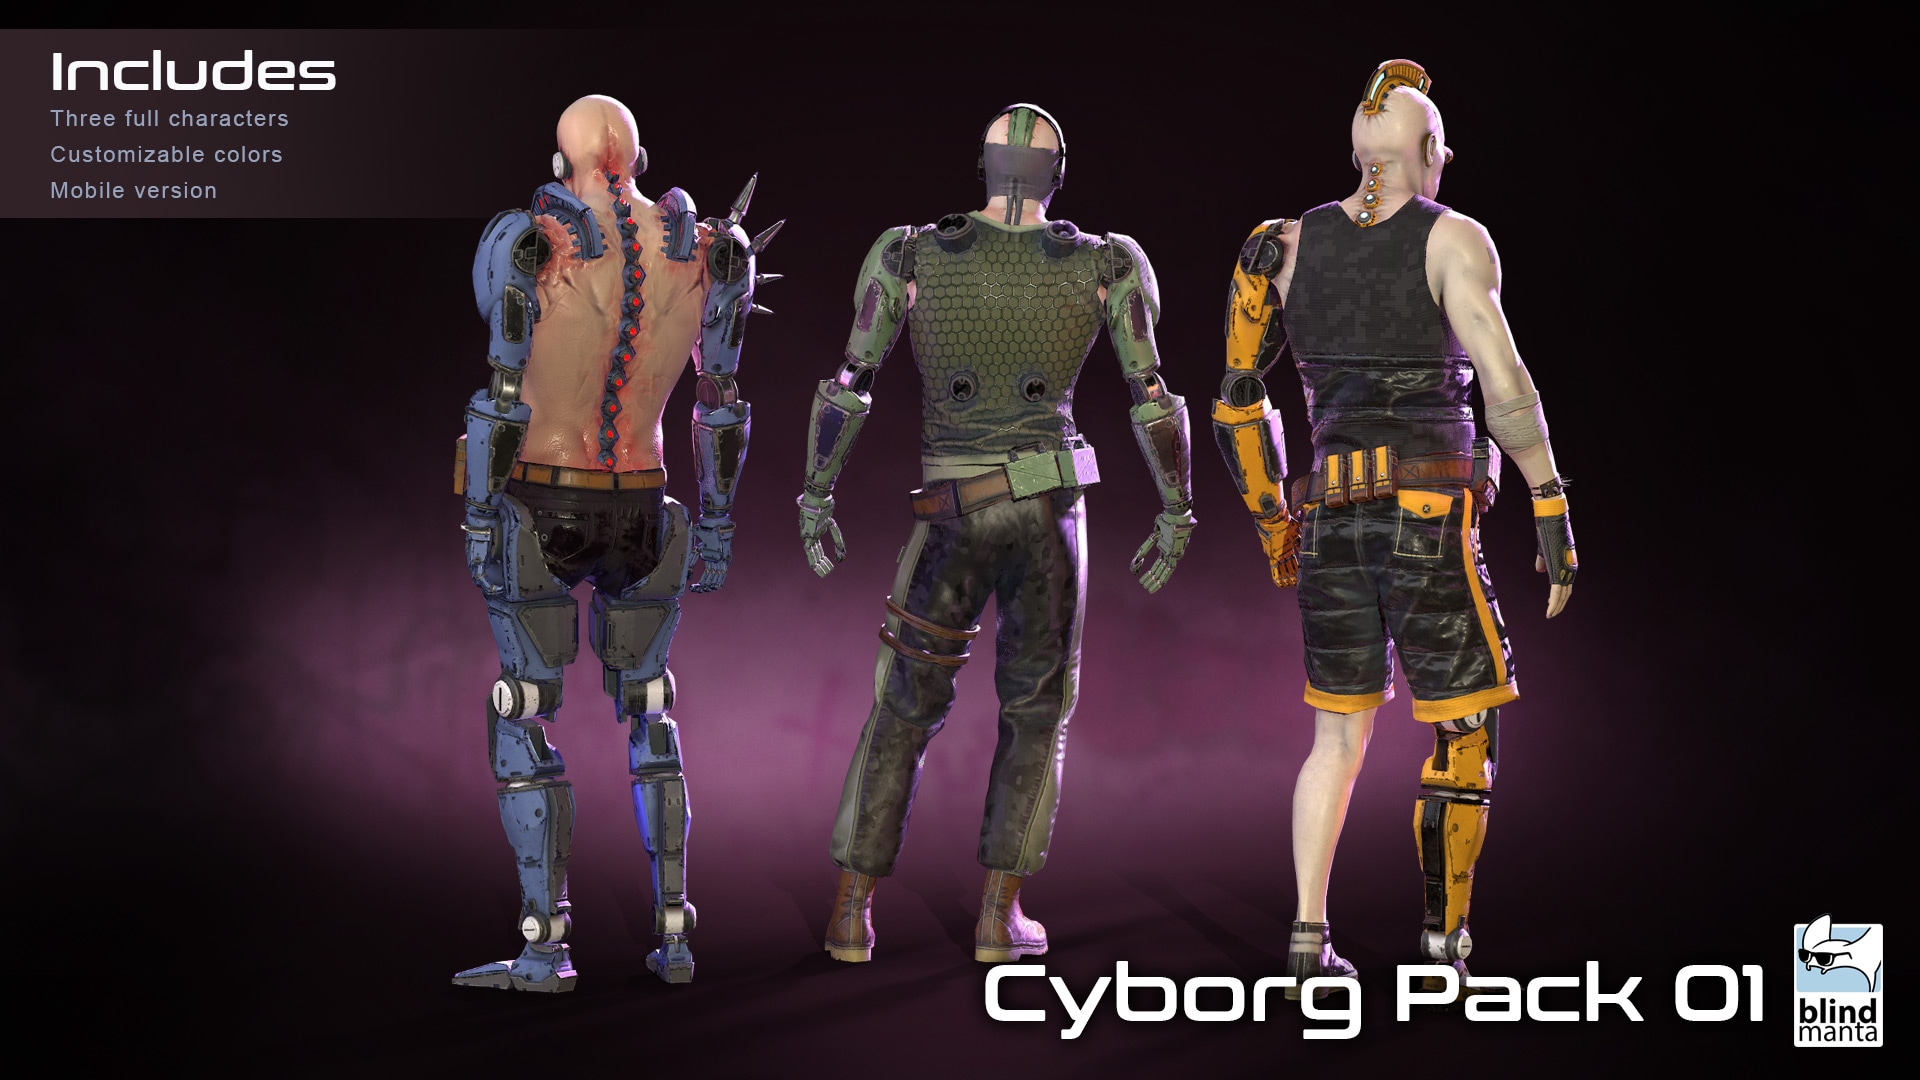 Cyborg Pack 01